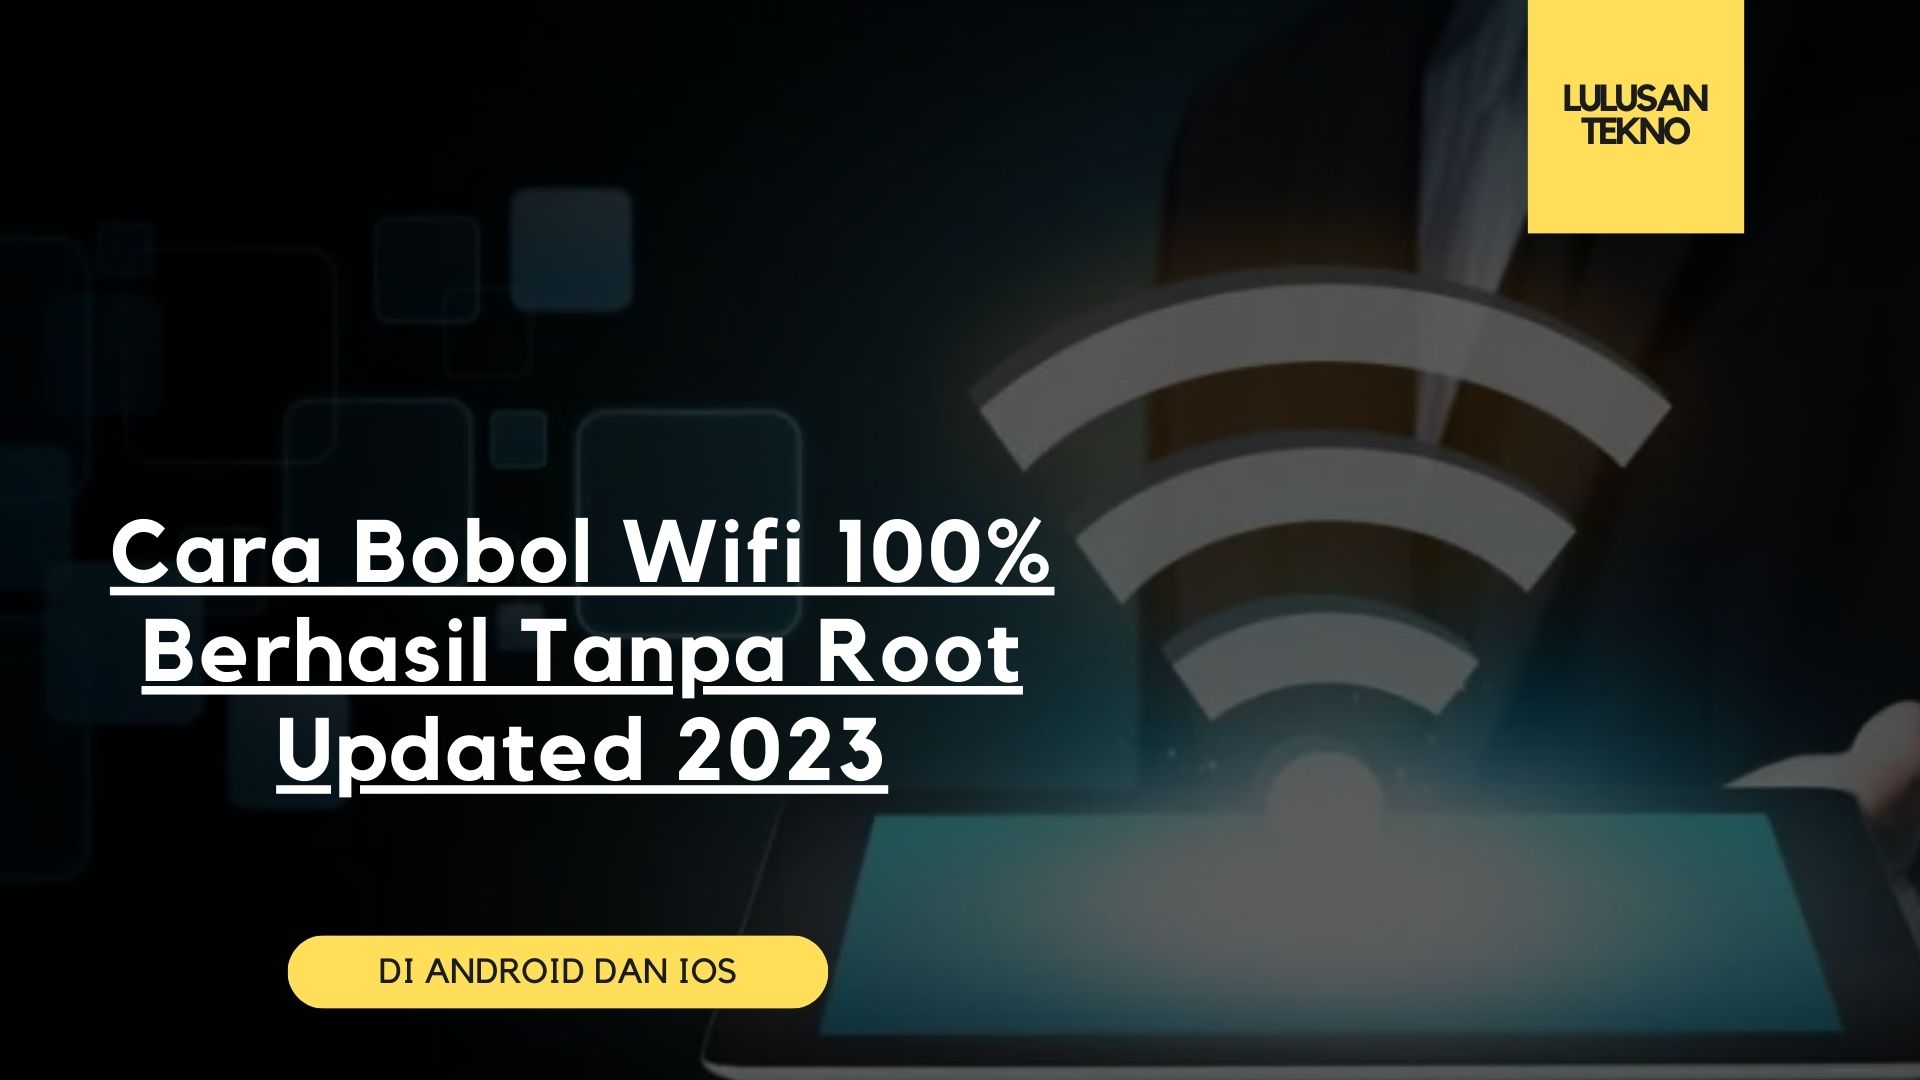 Cara Bobol Wifi 100% Berhasil Tanpa Root Updated 2023